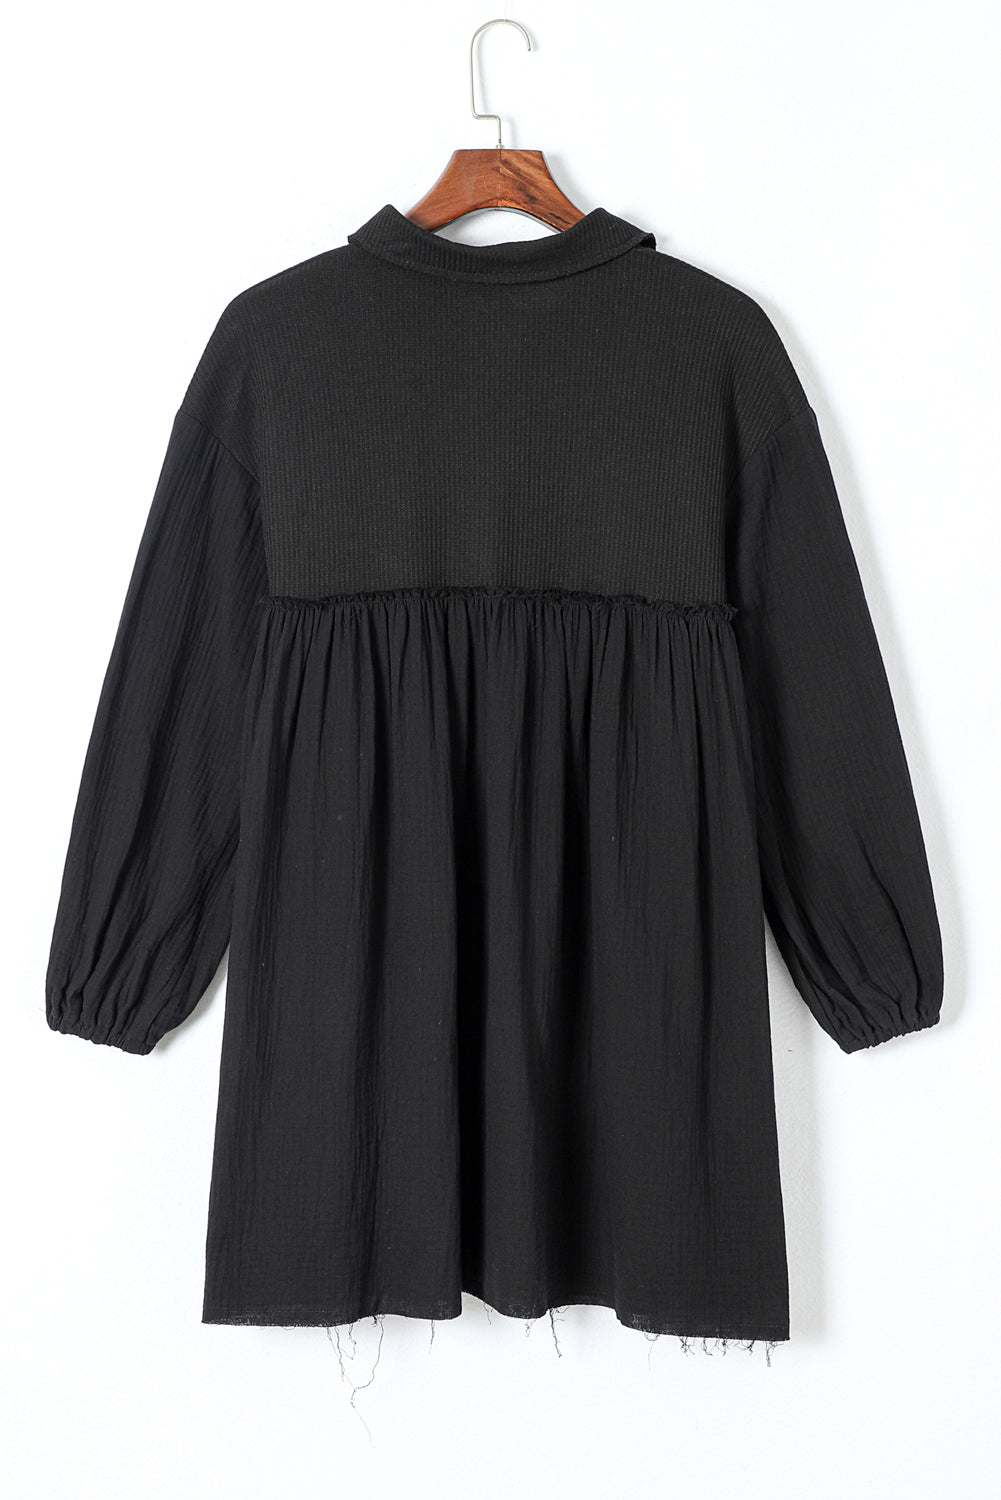 Crna haljina košulje s puf rukavima od krpica